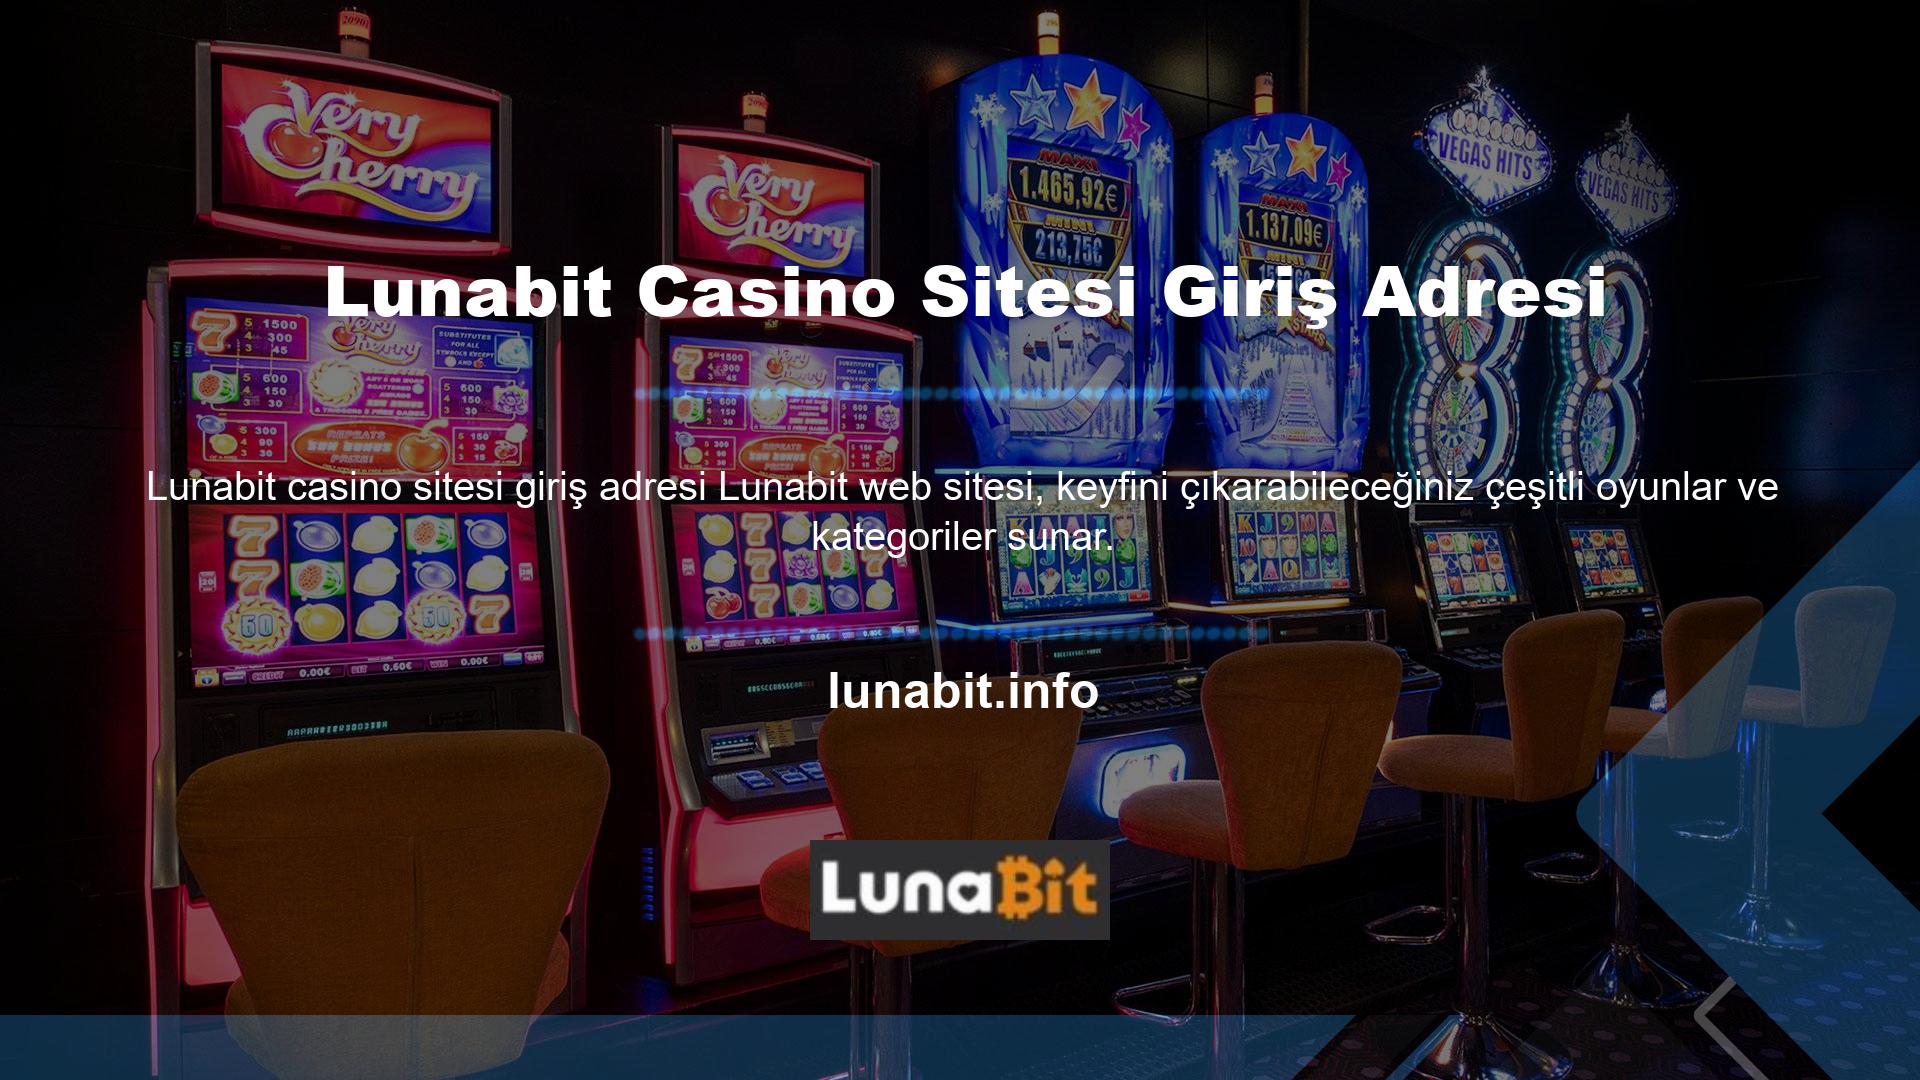 Yeni web sitemizin duyurulması üzerine yurt dışı casino sitemizin giriş adresini platformumuzdaki tüm oyuncularla paylaşacağız, böylece karanlıkta kalmayacaklar